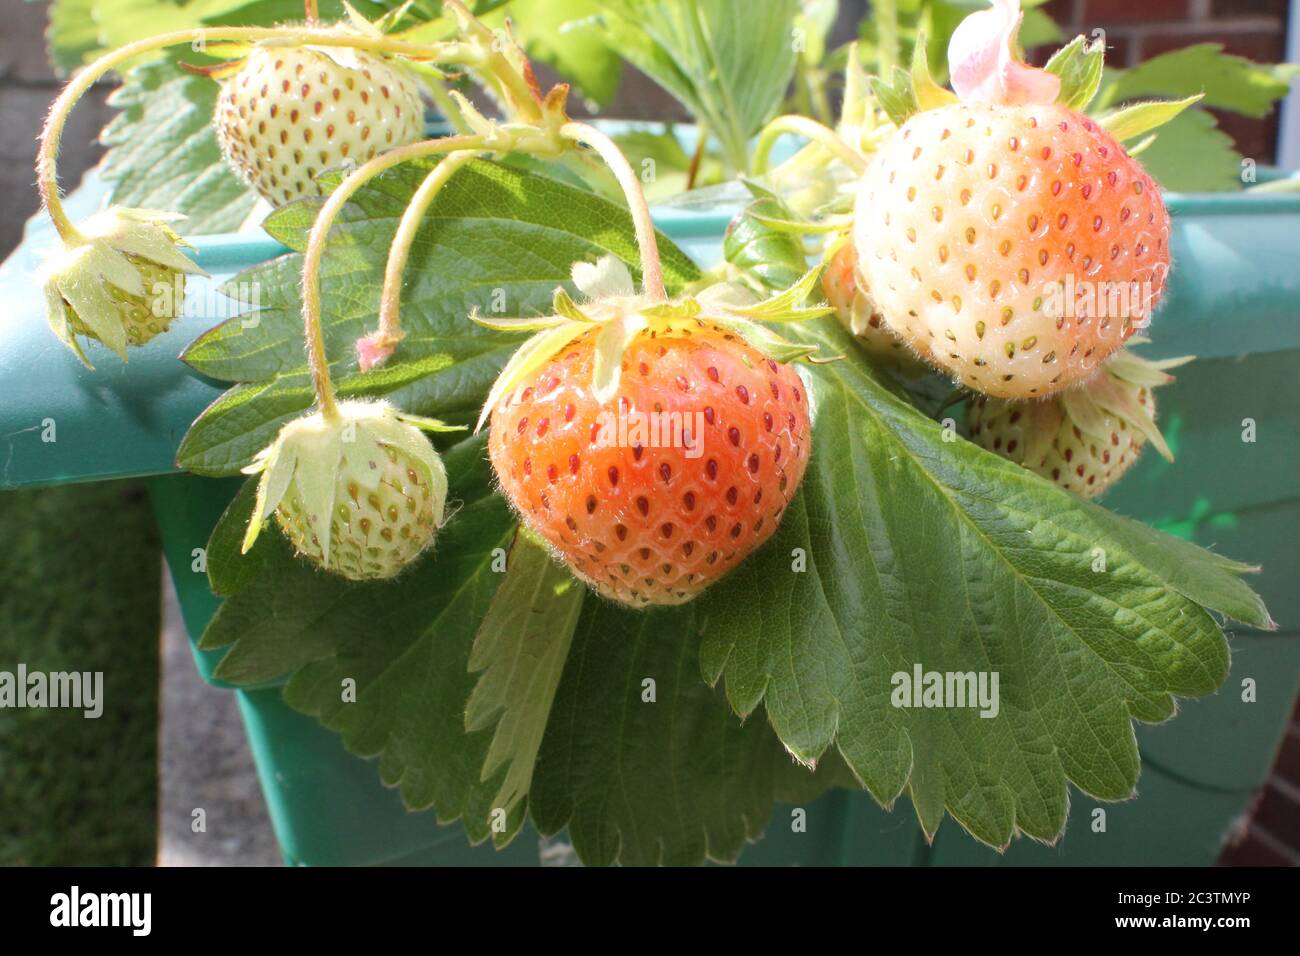 Erdbeerpflanze mit reifen und unter reifen Früchten Stockfoto